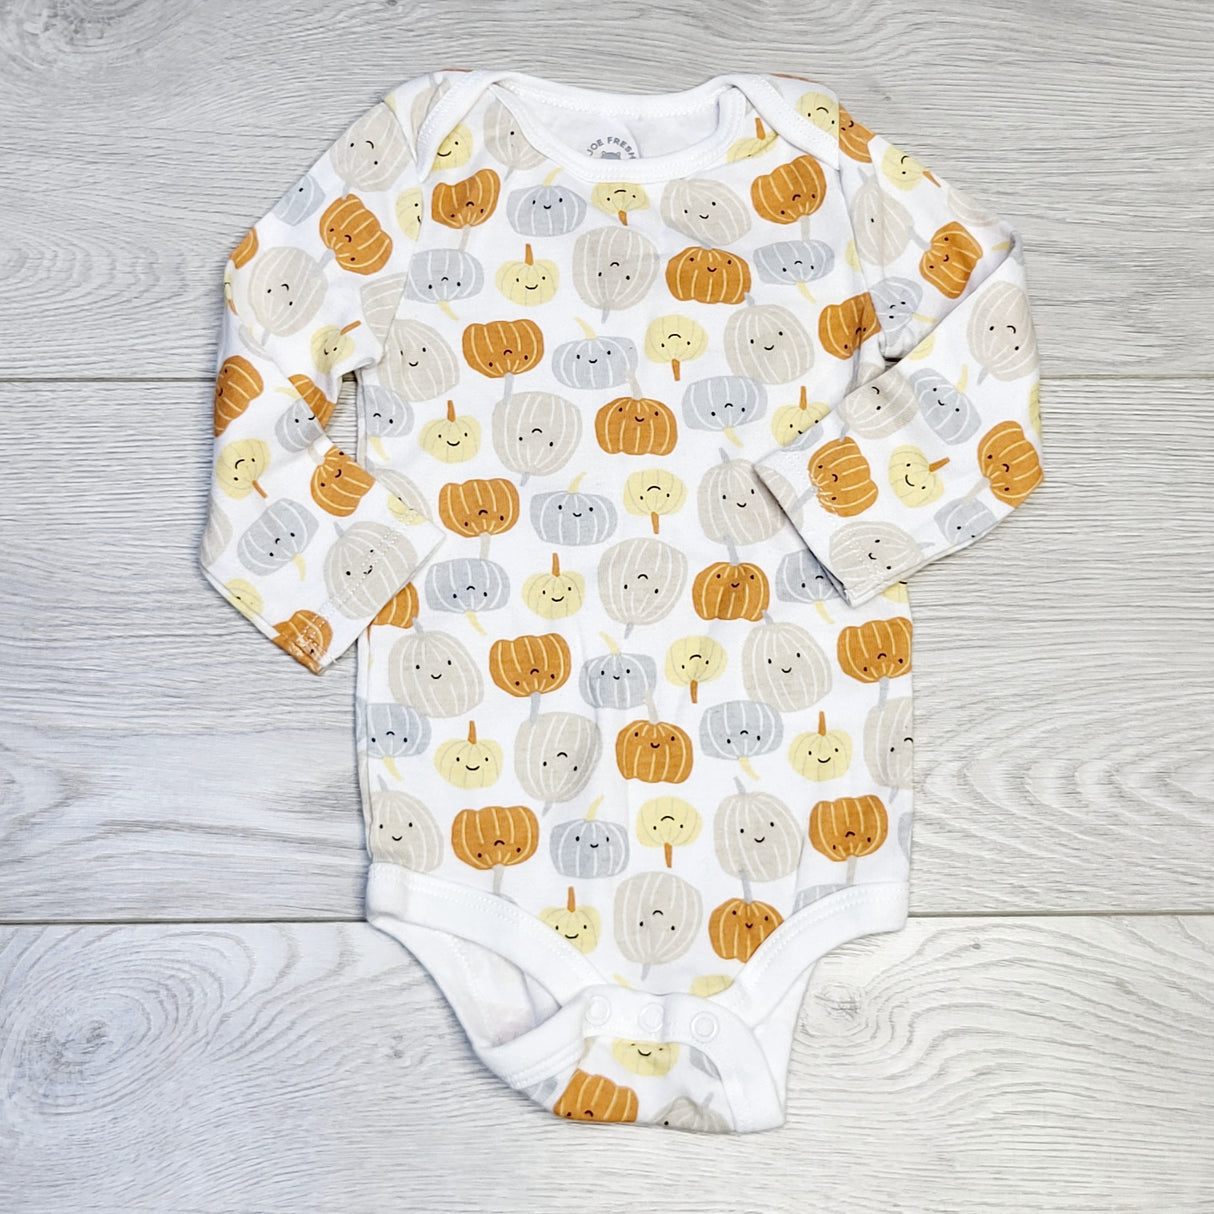 COWN1 - Joe white onesie with pumpkins.  Size 3-6 months